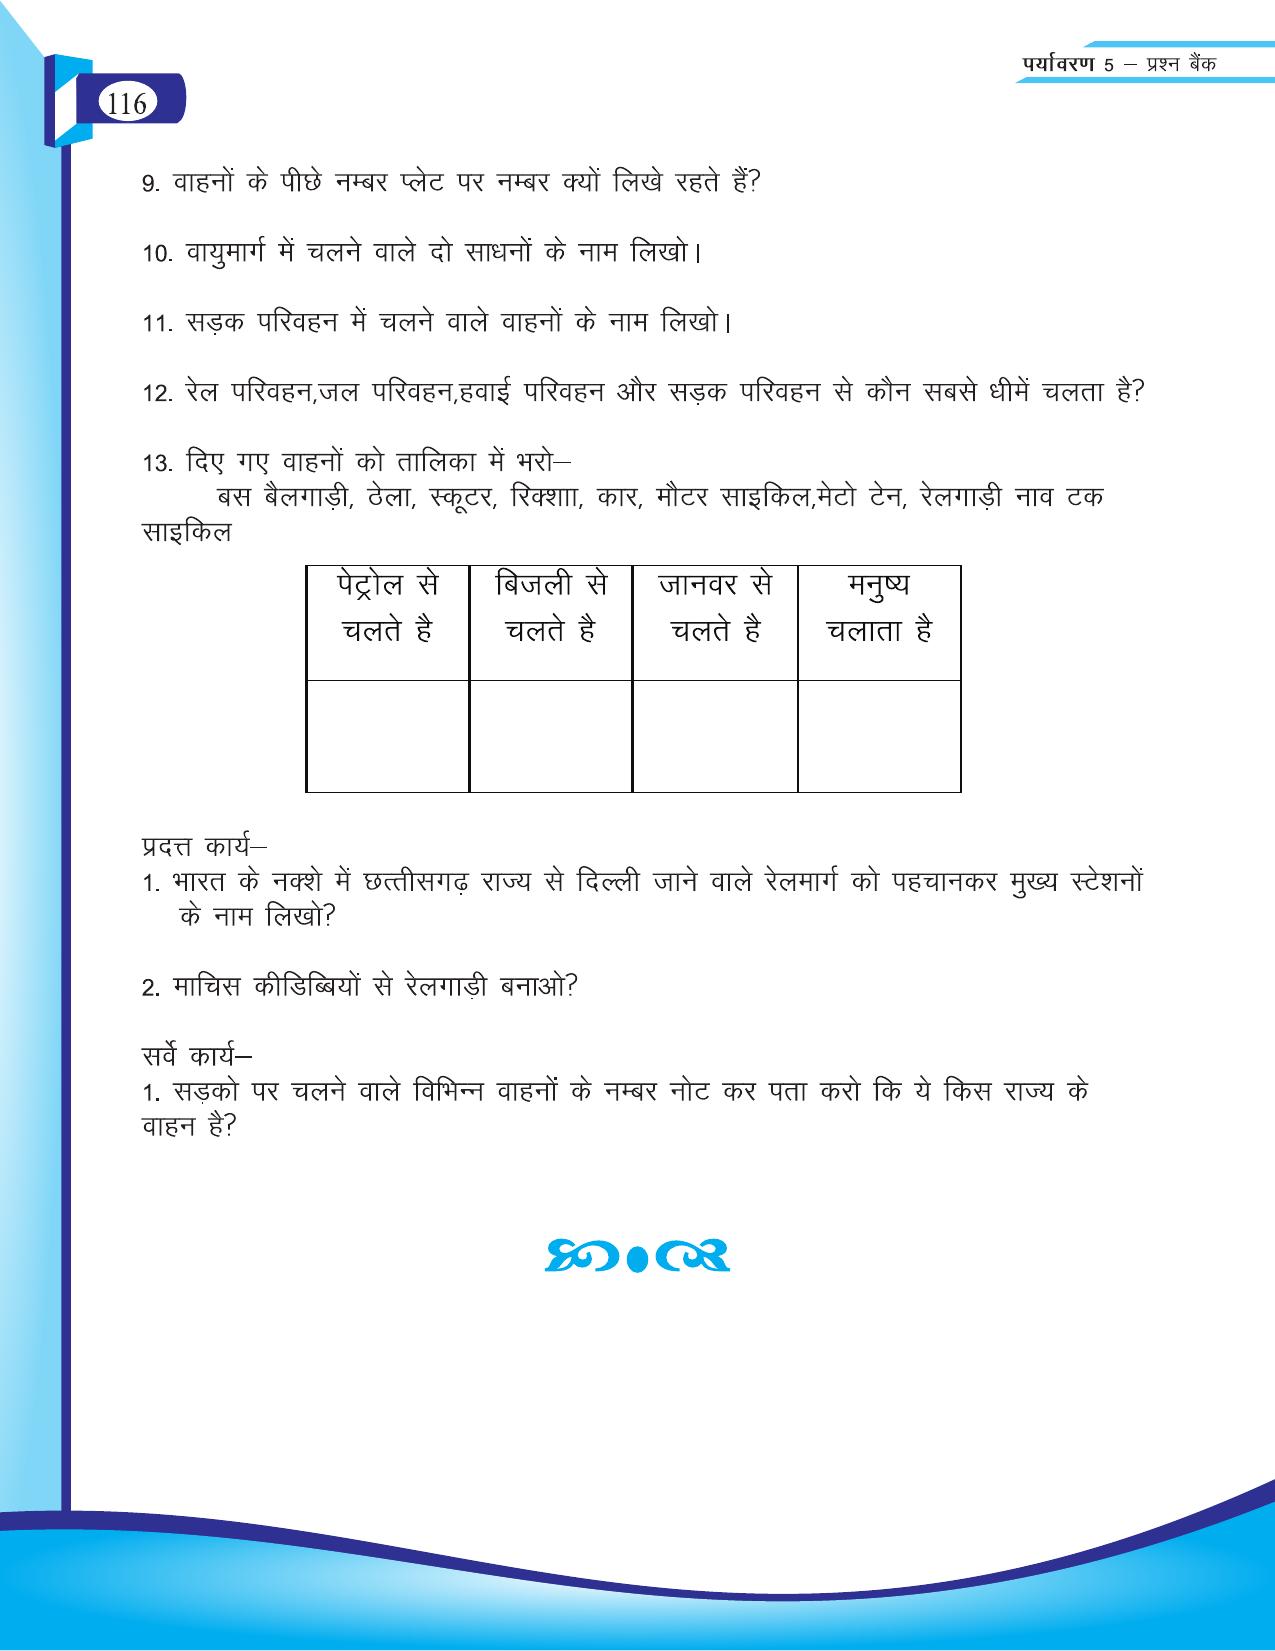 Chhattisgarh Board Class 5 EVS Question Bank 2015-16 - Page 42